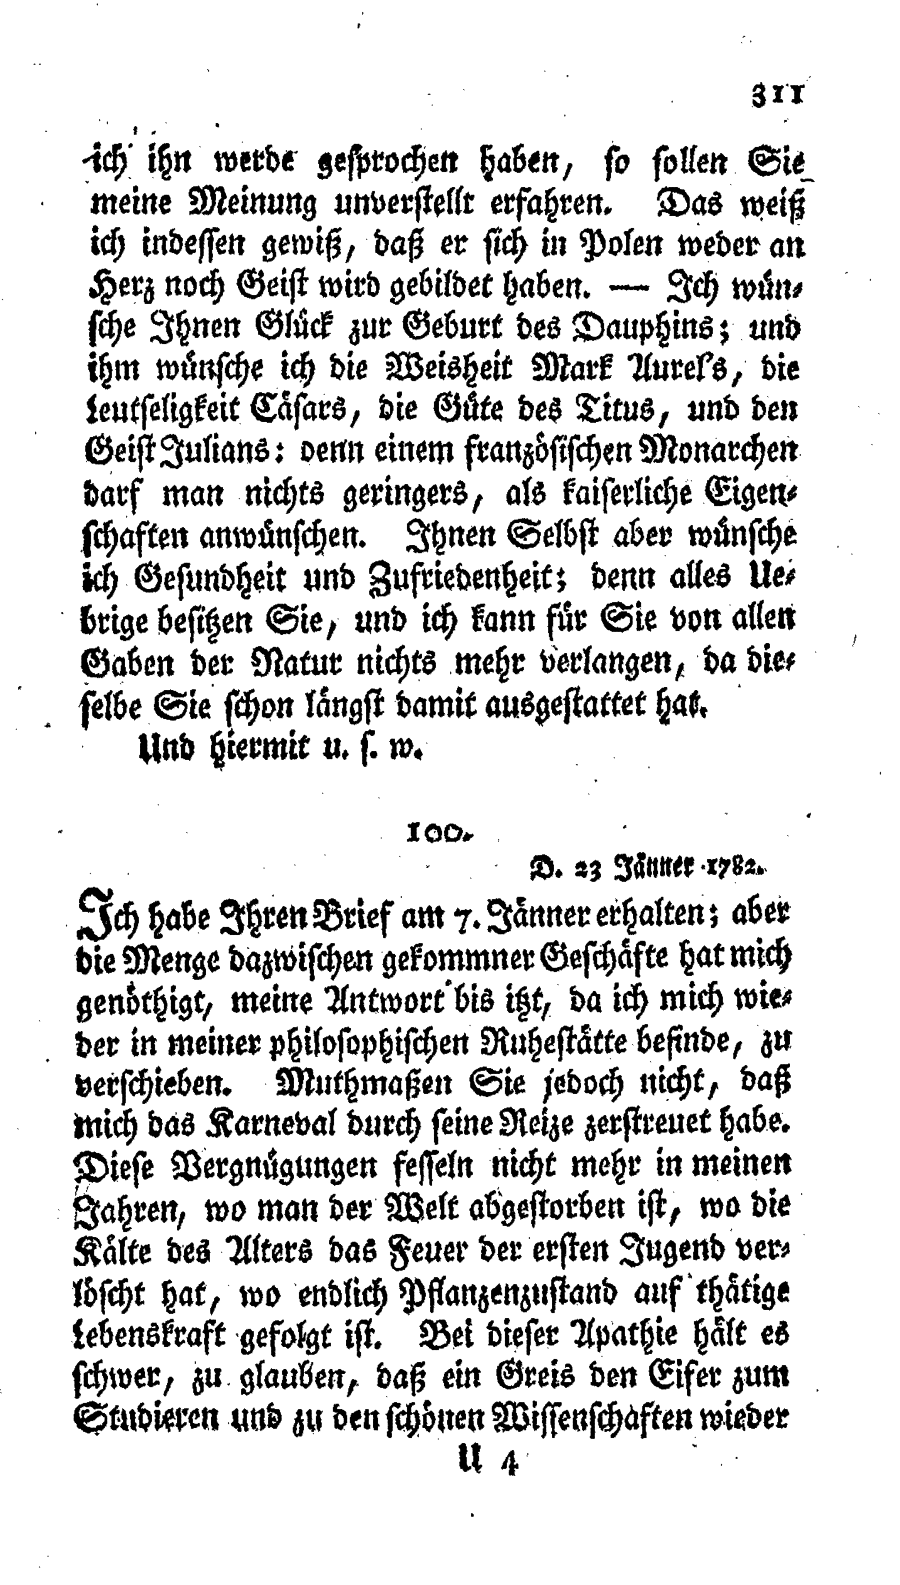 S. 311, Obj. 2